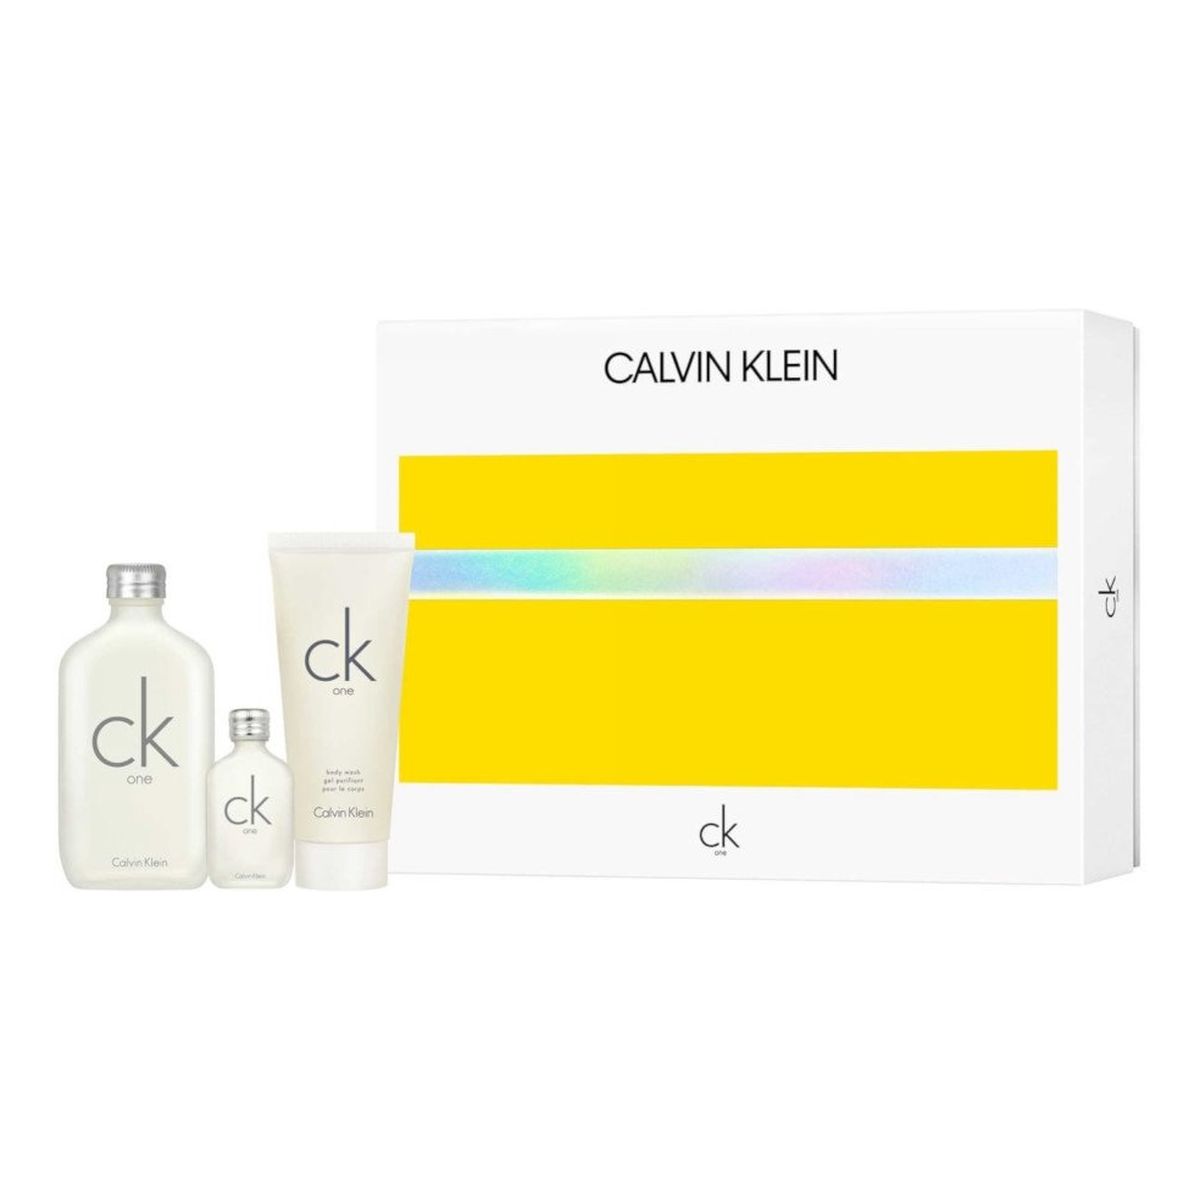 Calvin Klein CK One Zestaw woda toaletowa spray 100ml + miniatura wody toaletowej 15ml + żel pod prysznic 100ml